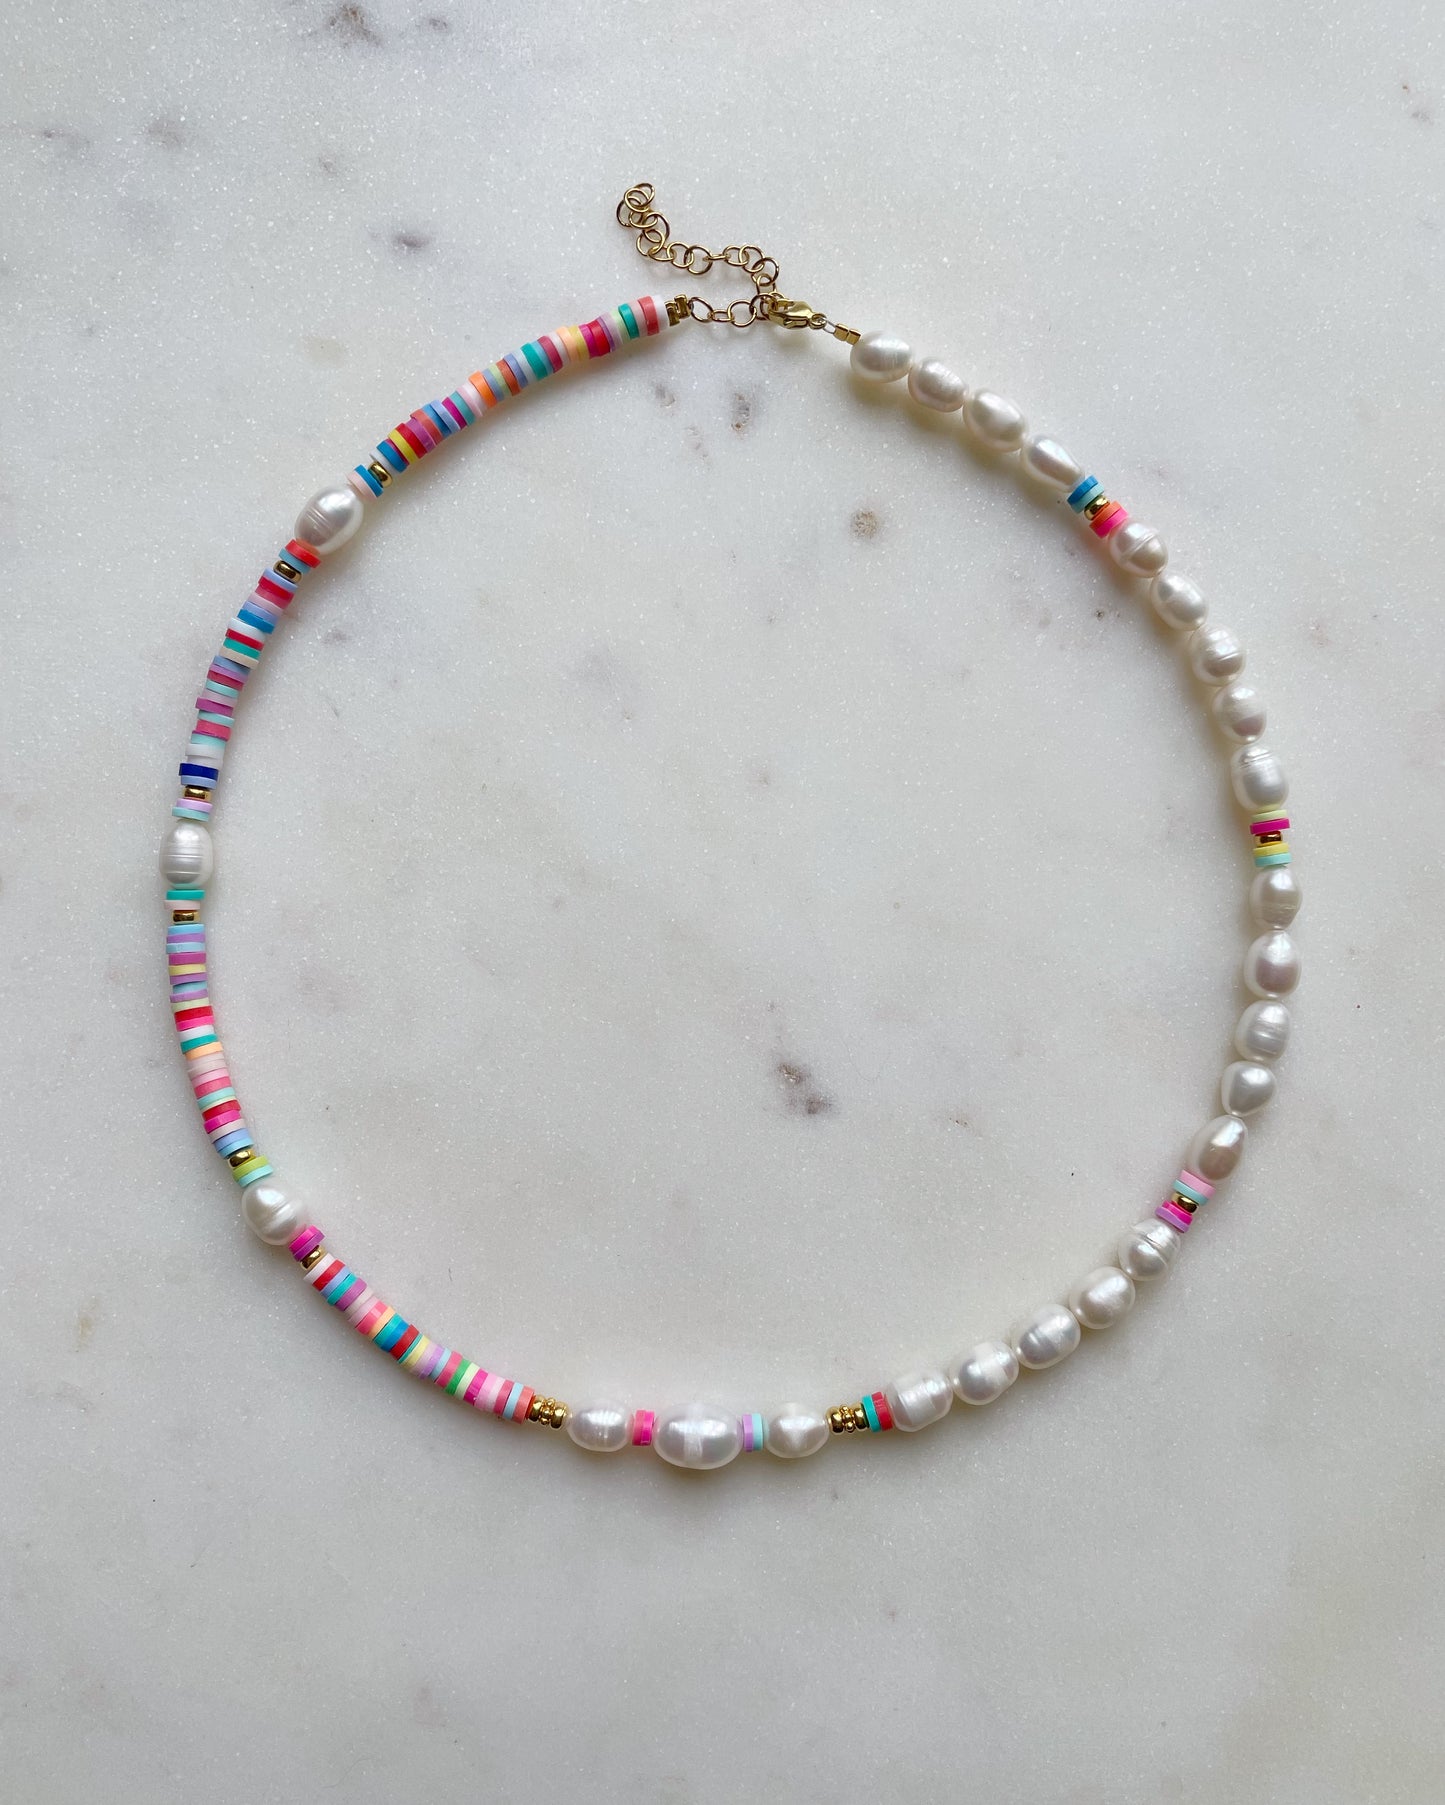 Samana Bay necklace & bracelet set